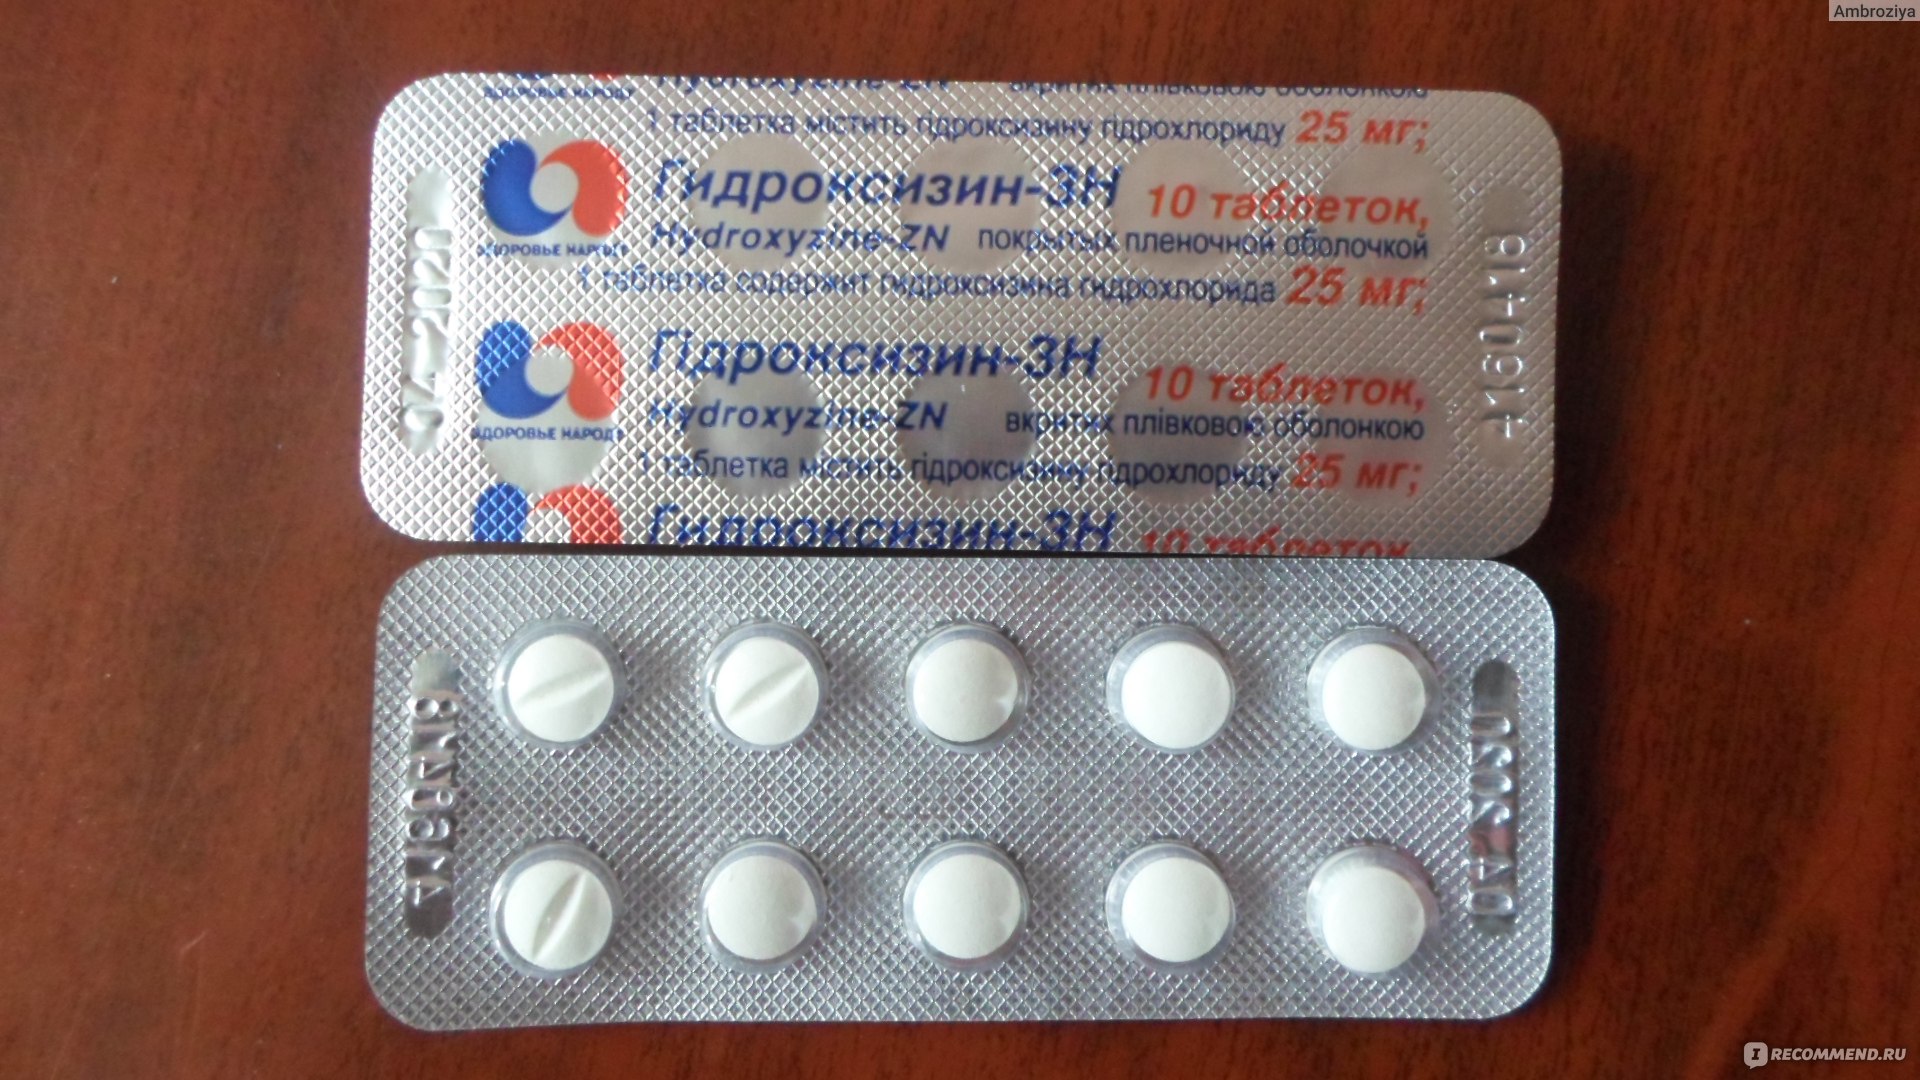 Атаракс: инструкция по применению, аналоги и отзывы, цены в аптеках россии